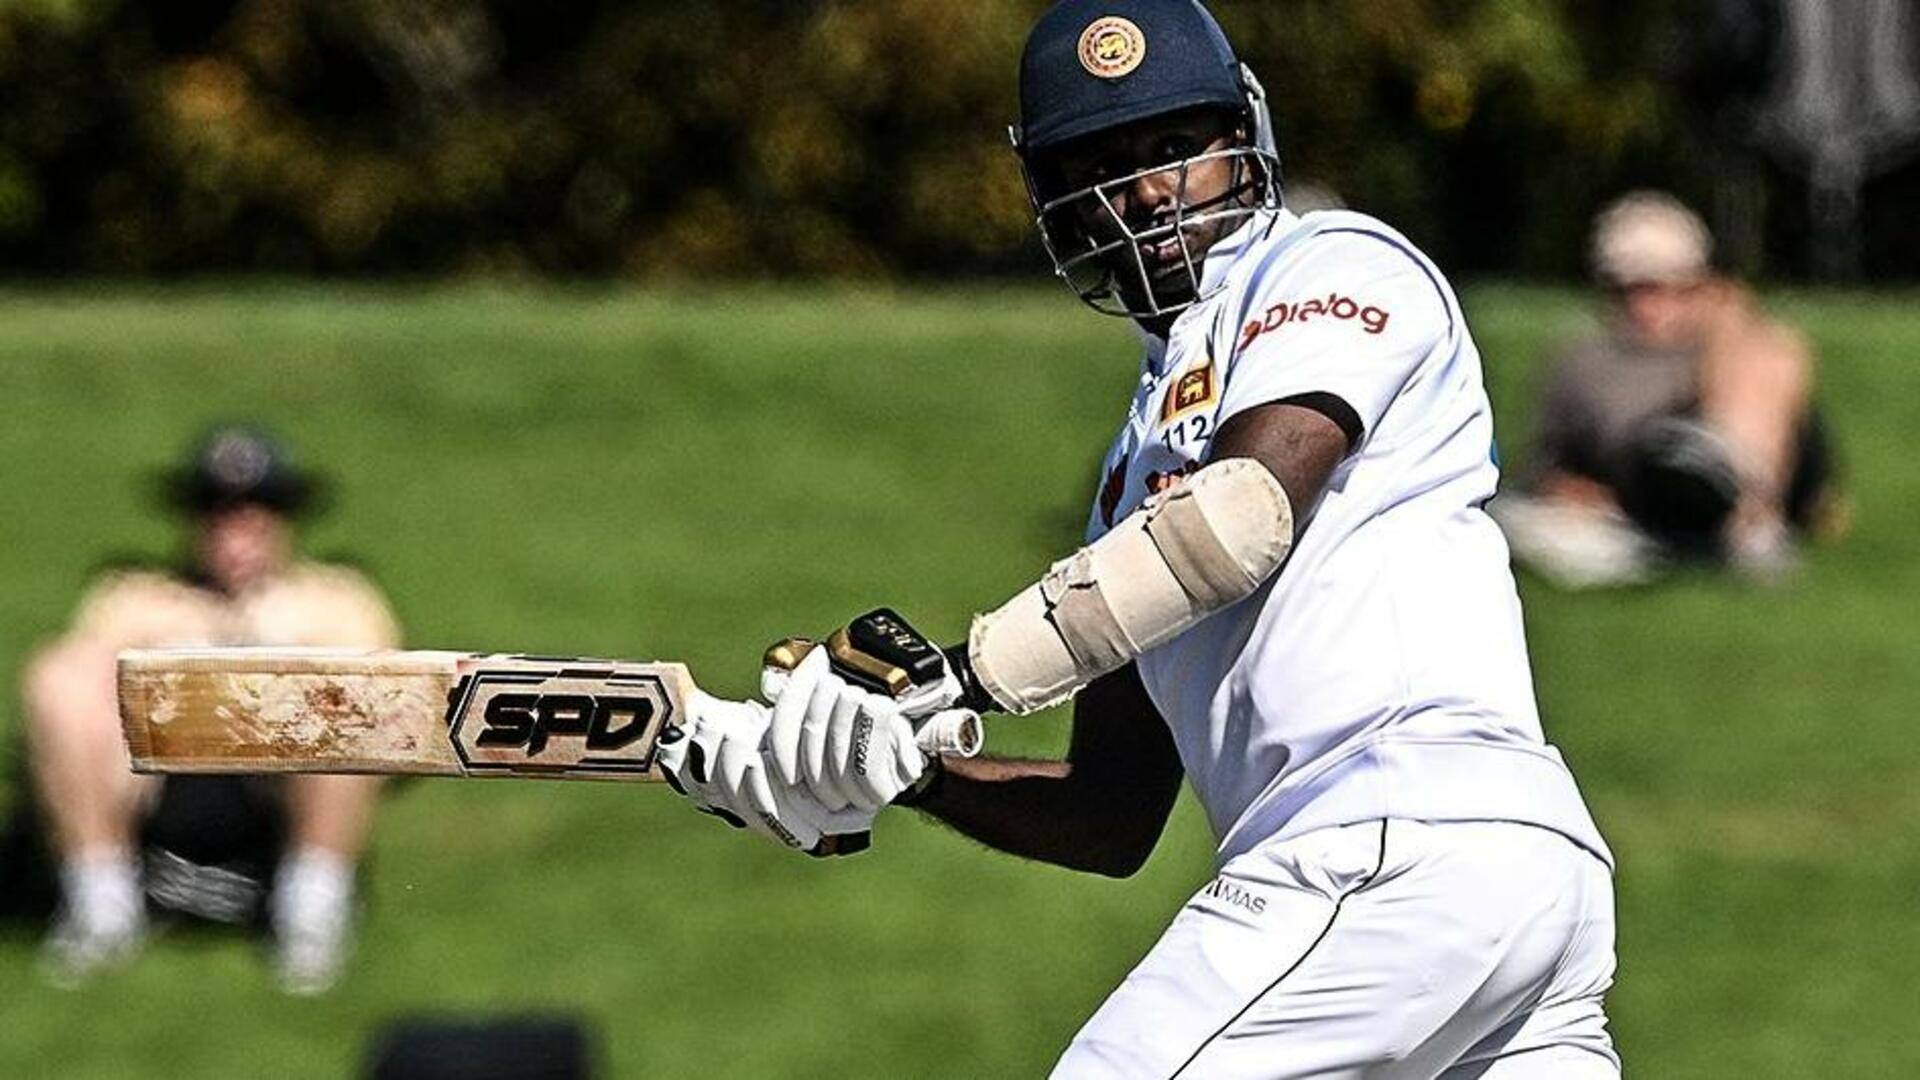 न्यूजीलैंड बनाम श्रीलंका: एंजेलो मैथ्यूज ने जड़ा टेस्ट करियर का 14वां शतक, जानिए उनके आंकड़े 